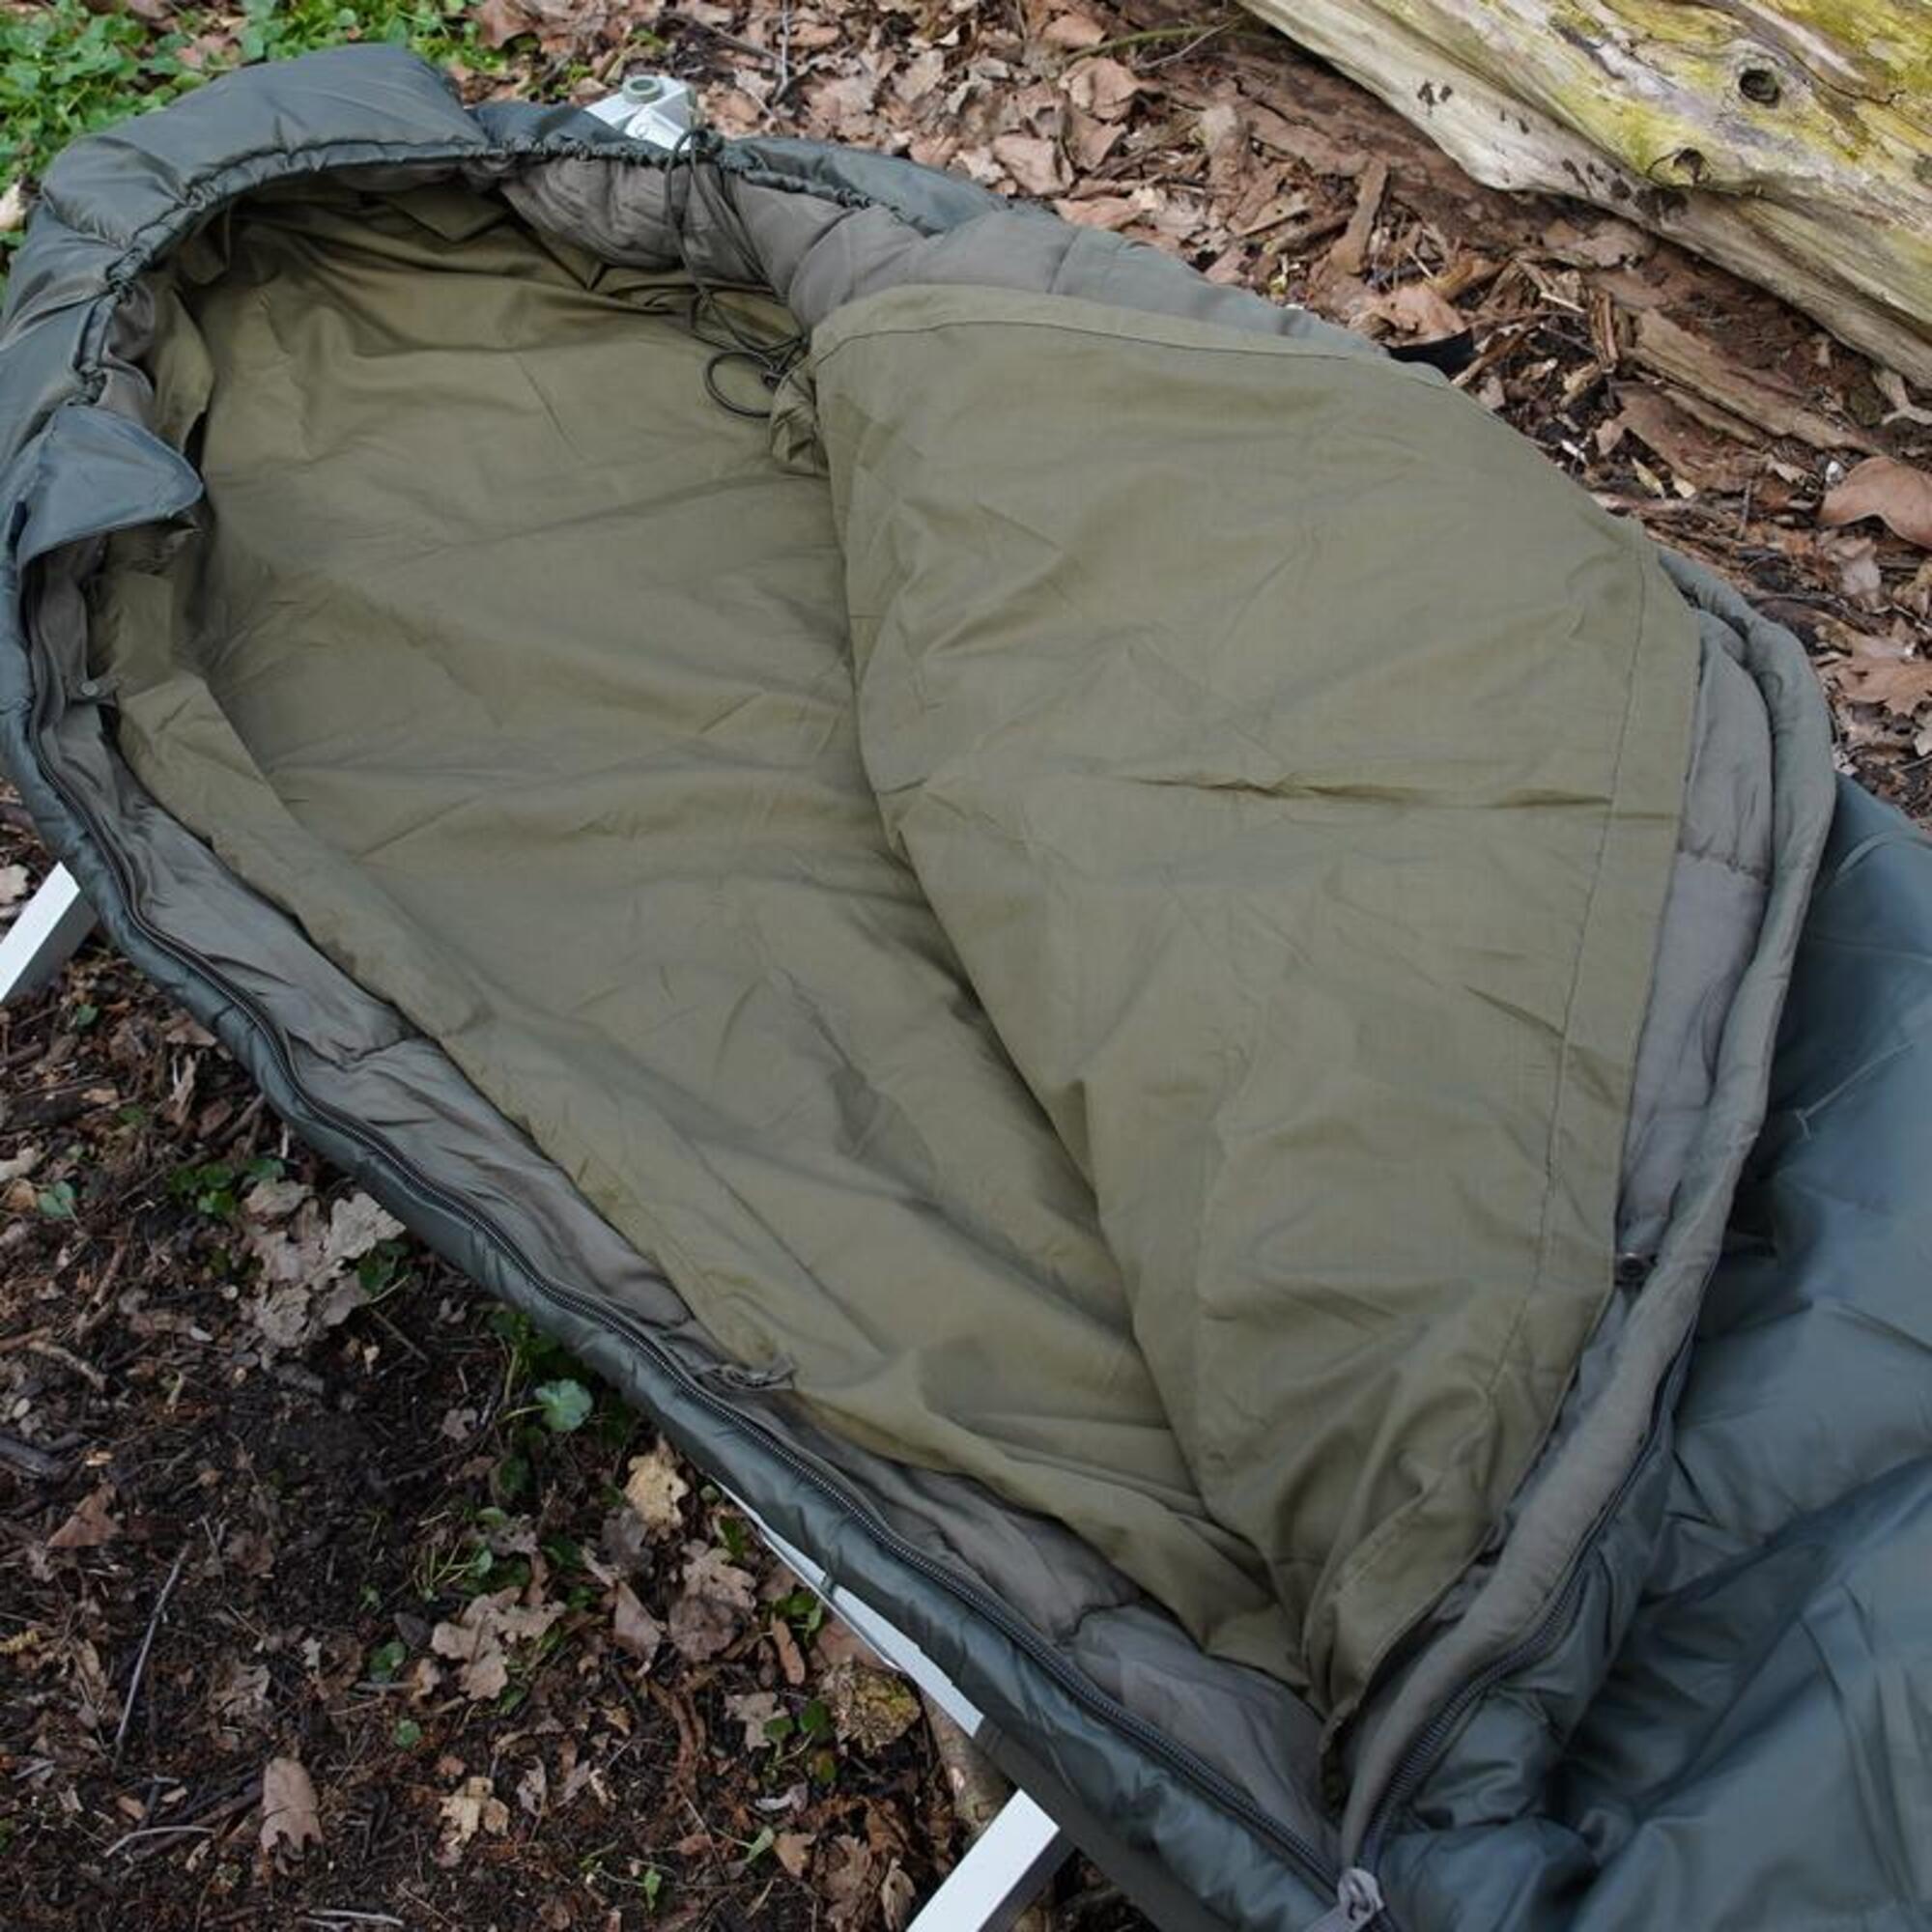 Sac en tissu pour sac de couchage modulaire 0°C 240 x 80 cm-Vert